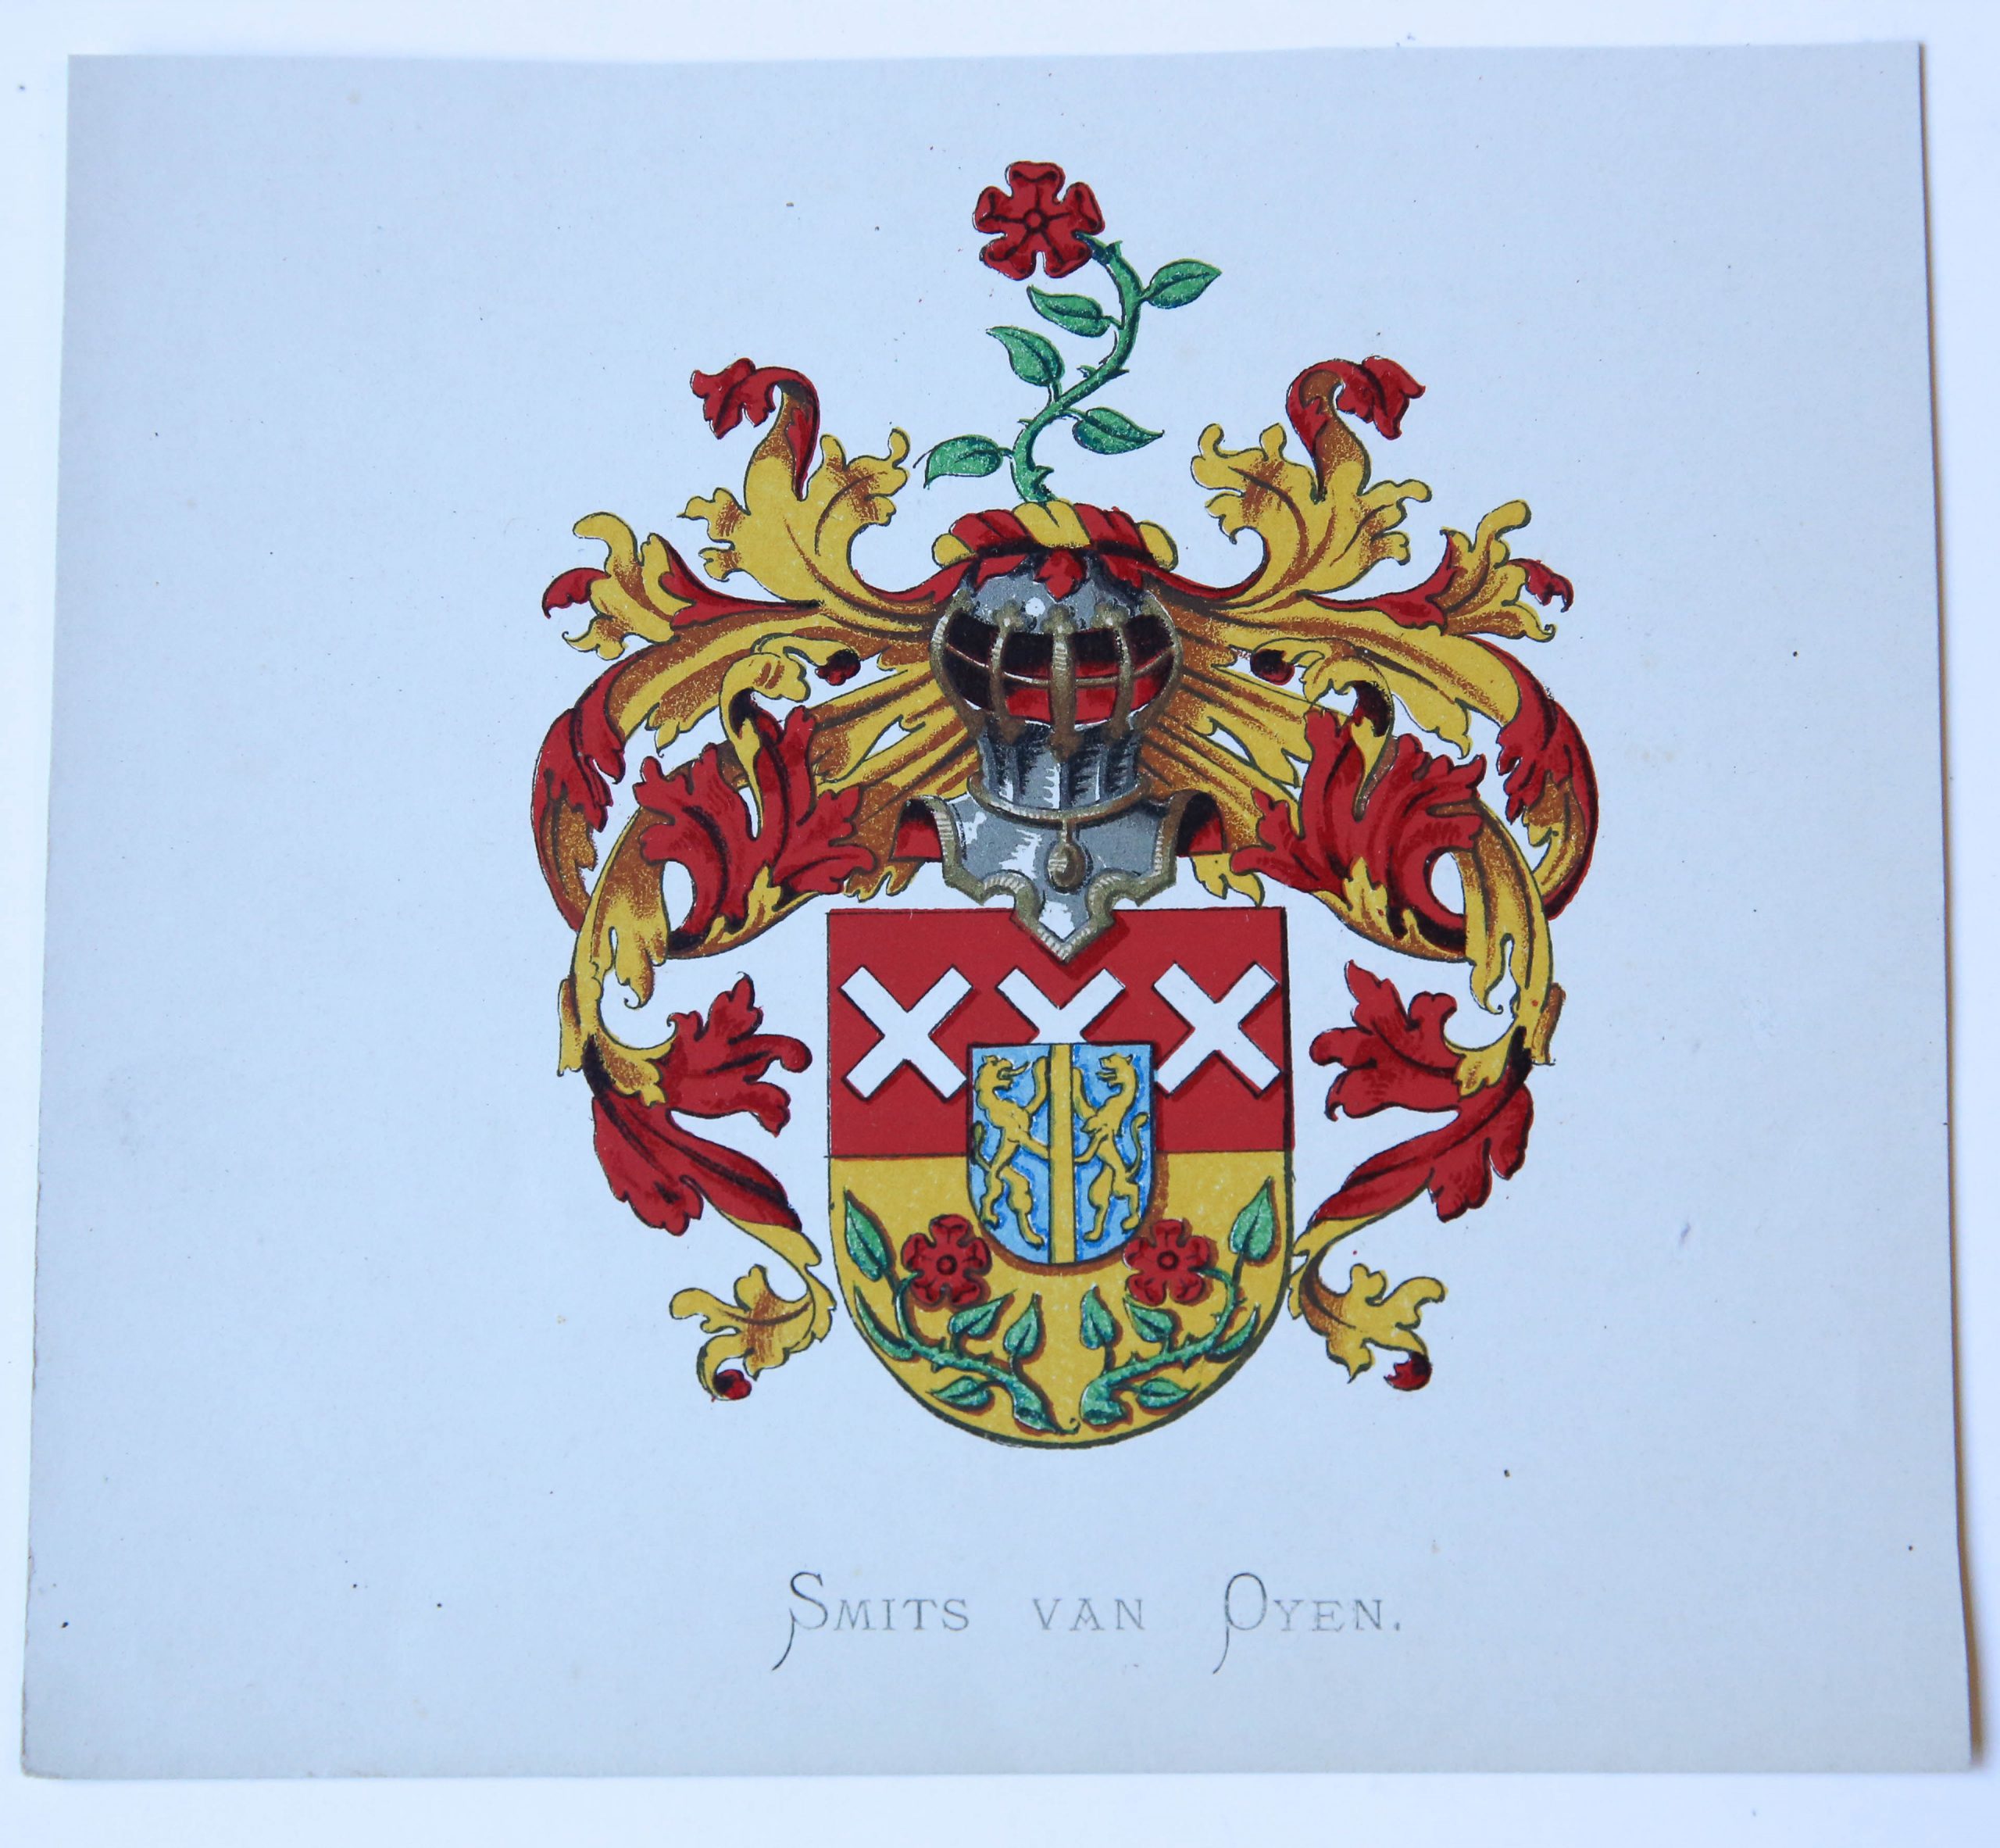 [Smits van Oyen] - Wapenkaart/Coat of Arms: Smits van Oyen.